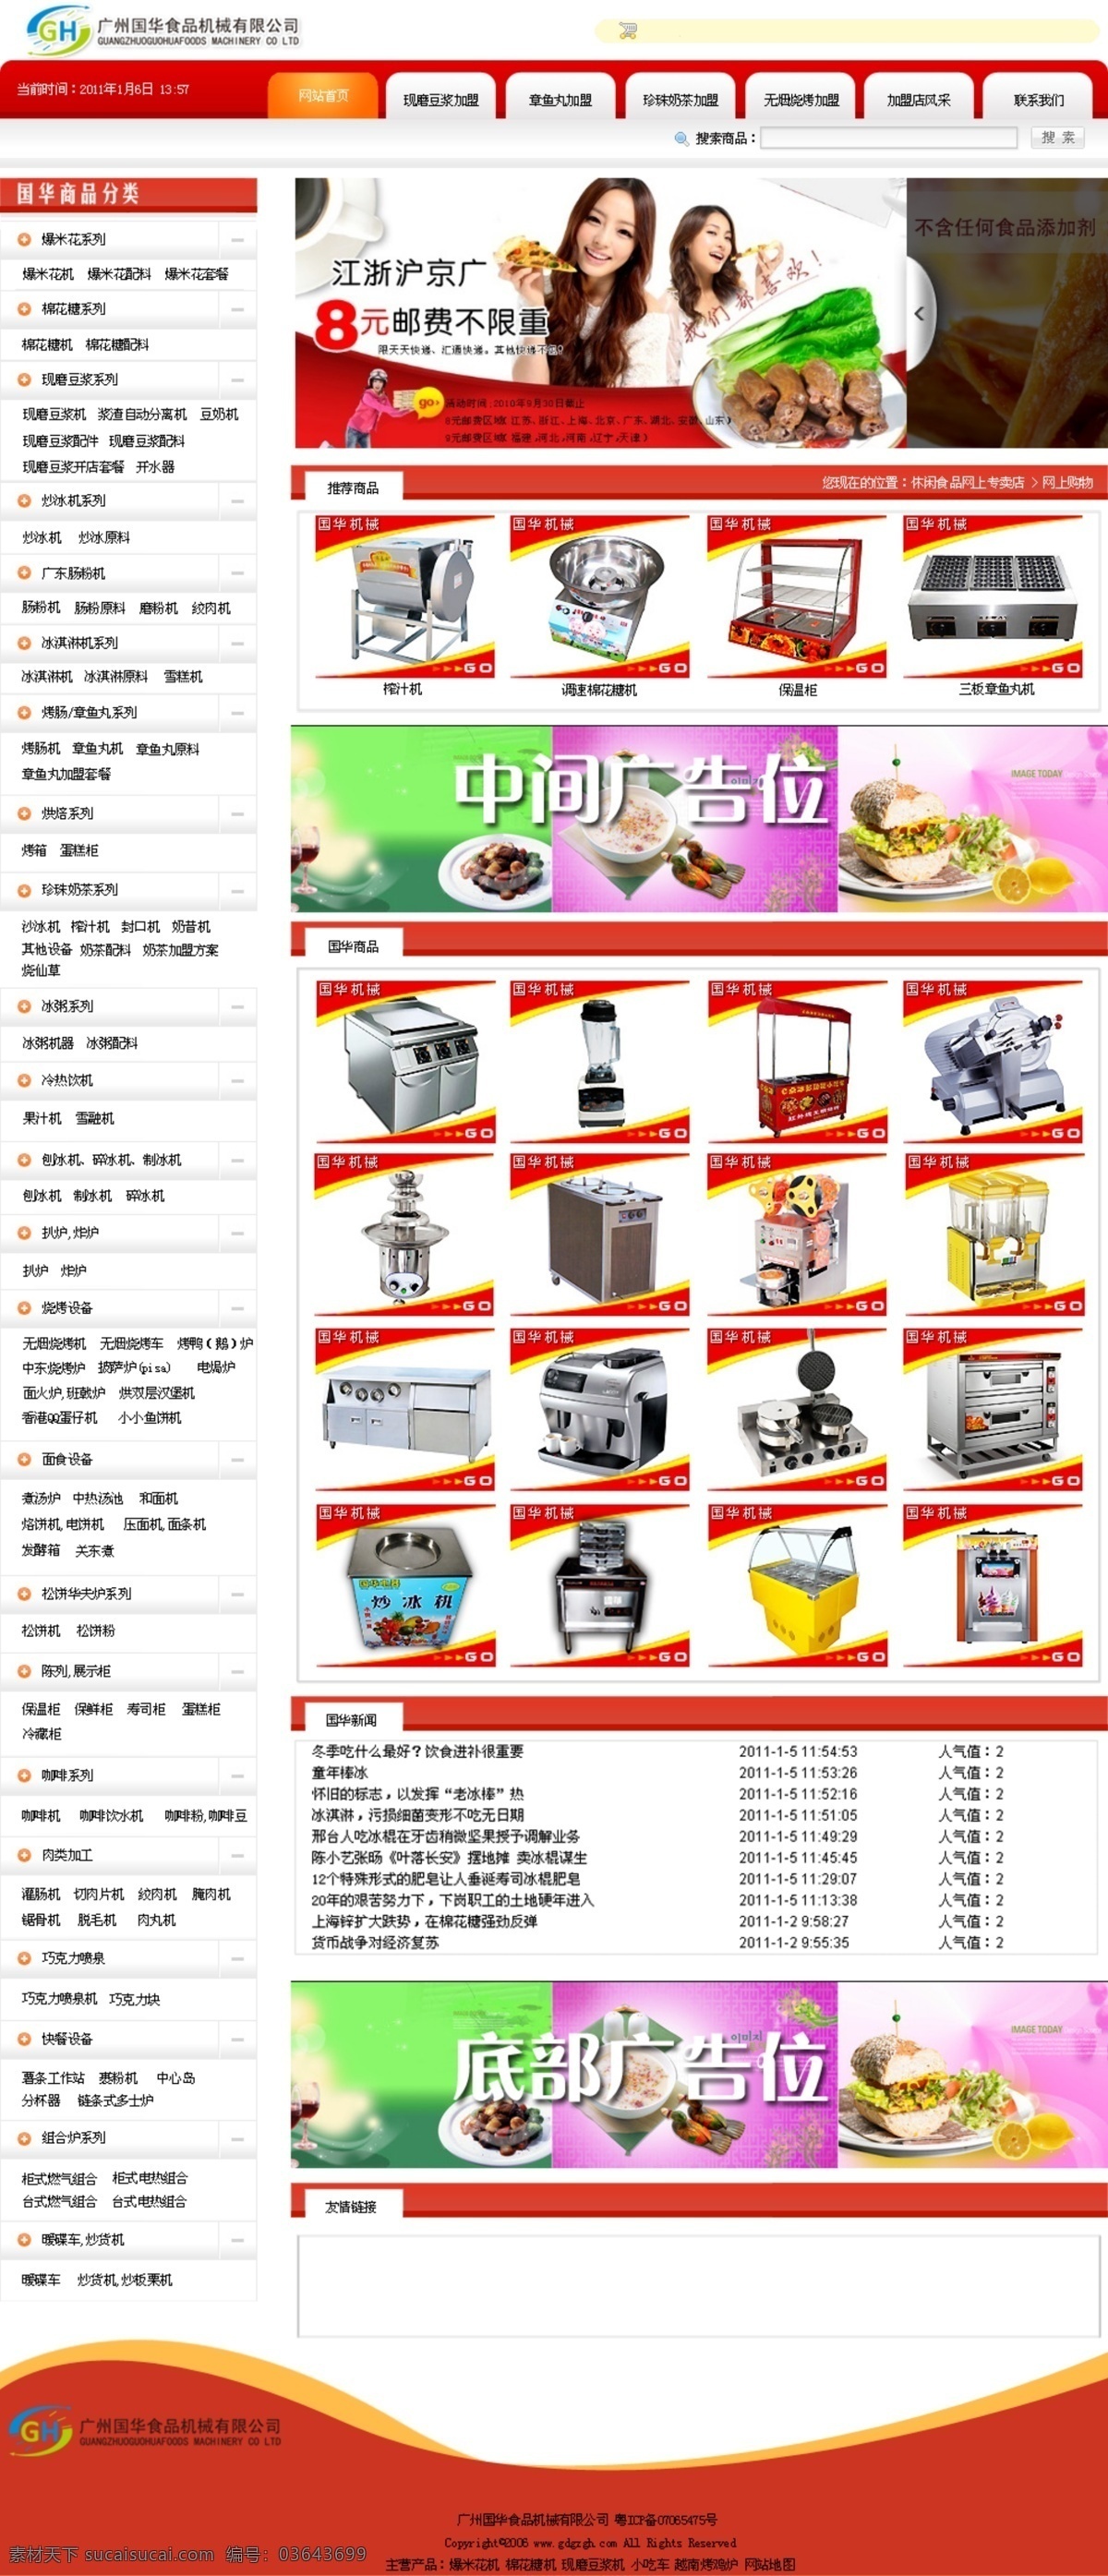 食品 机械设备 网站 模板 机械 设备 网页模板 中文模版 源文件